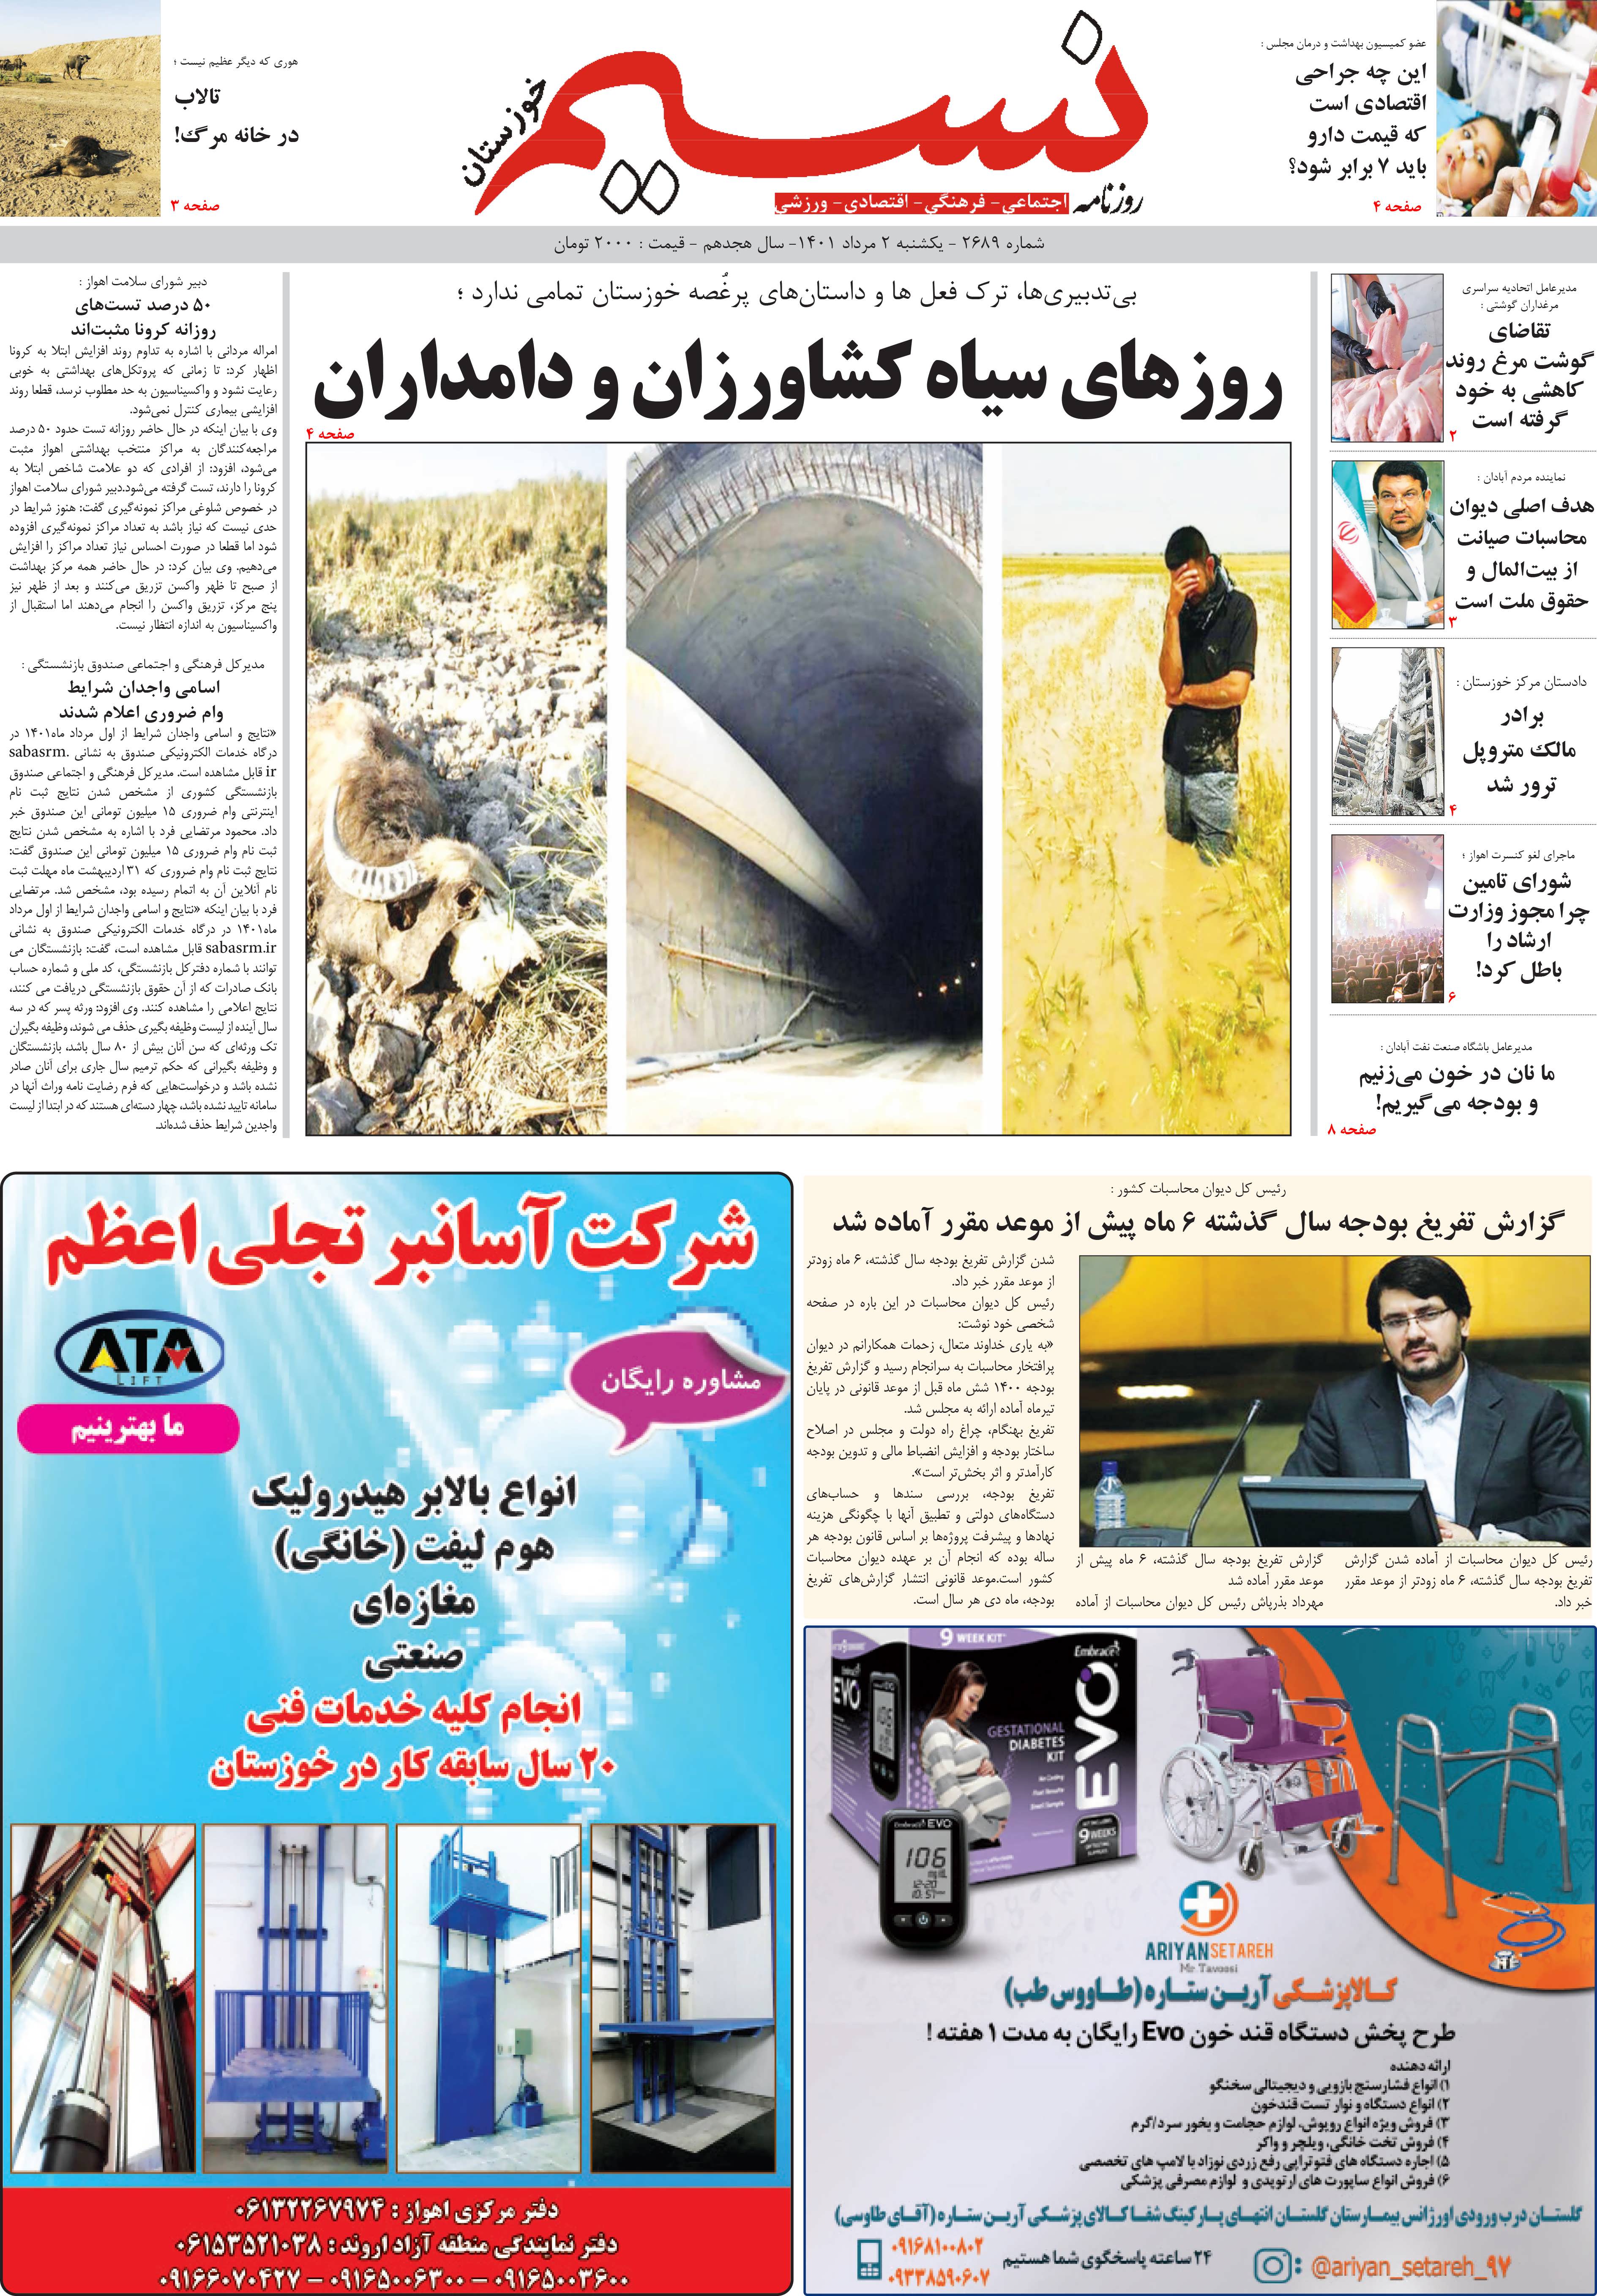 صفحه اصلی روزنامه نسیم شماره 2689 